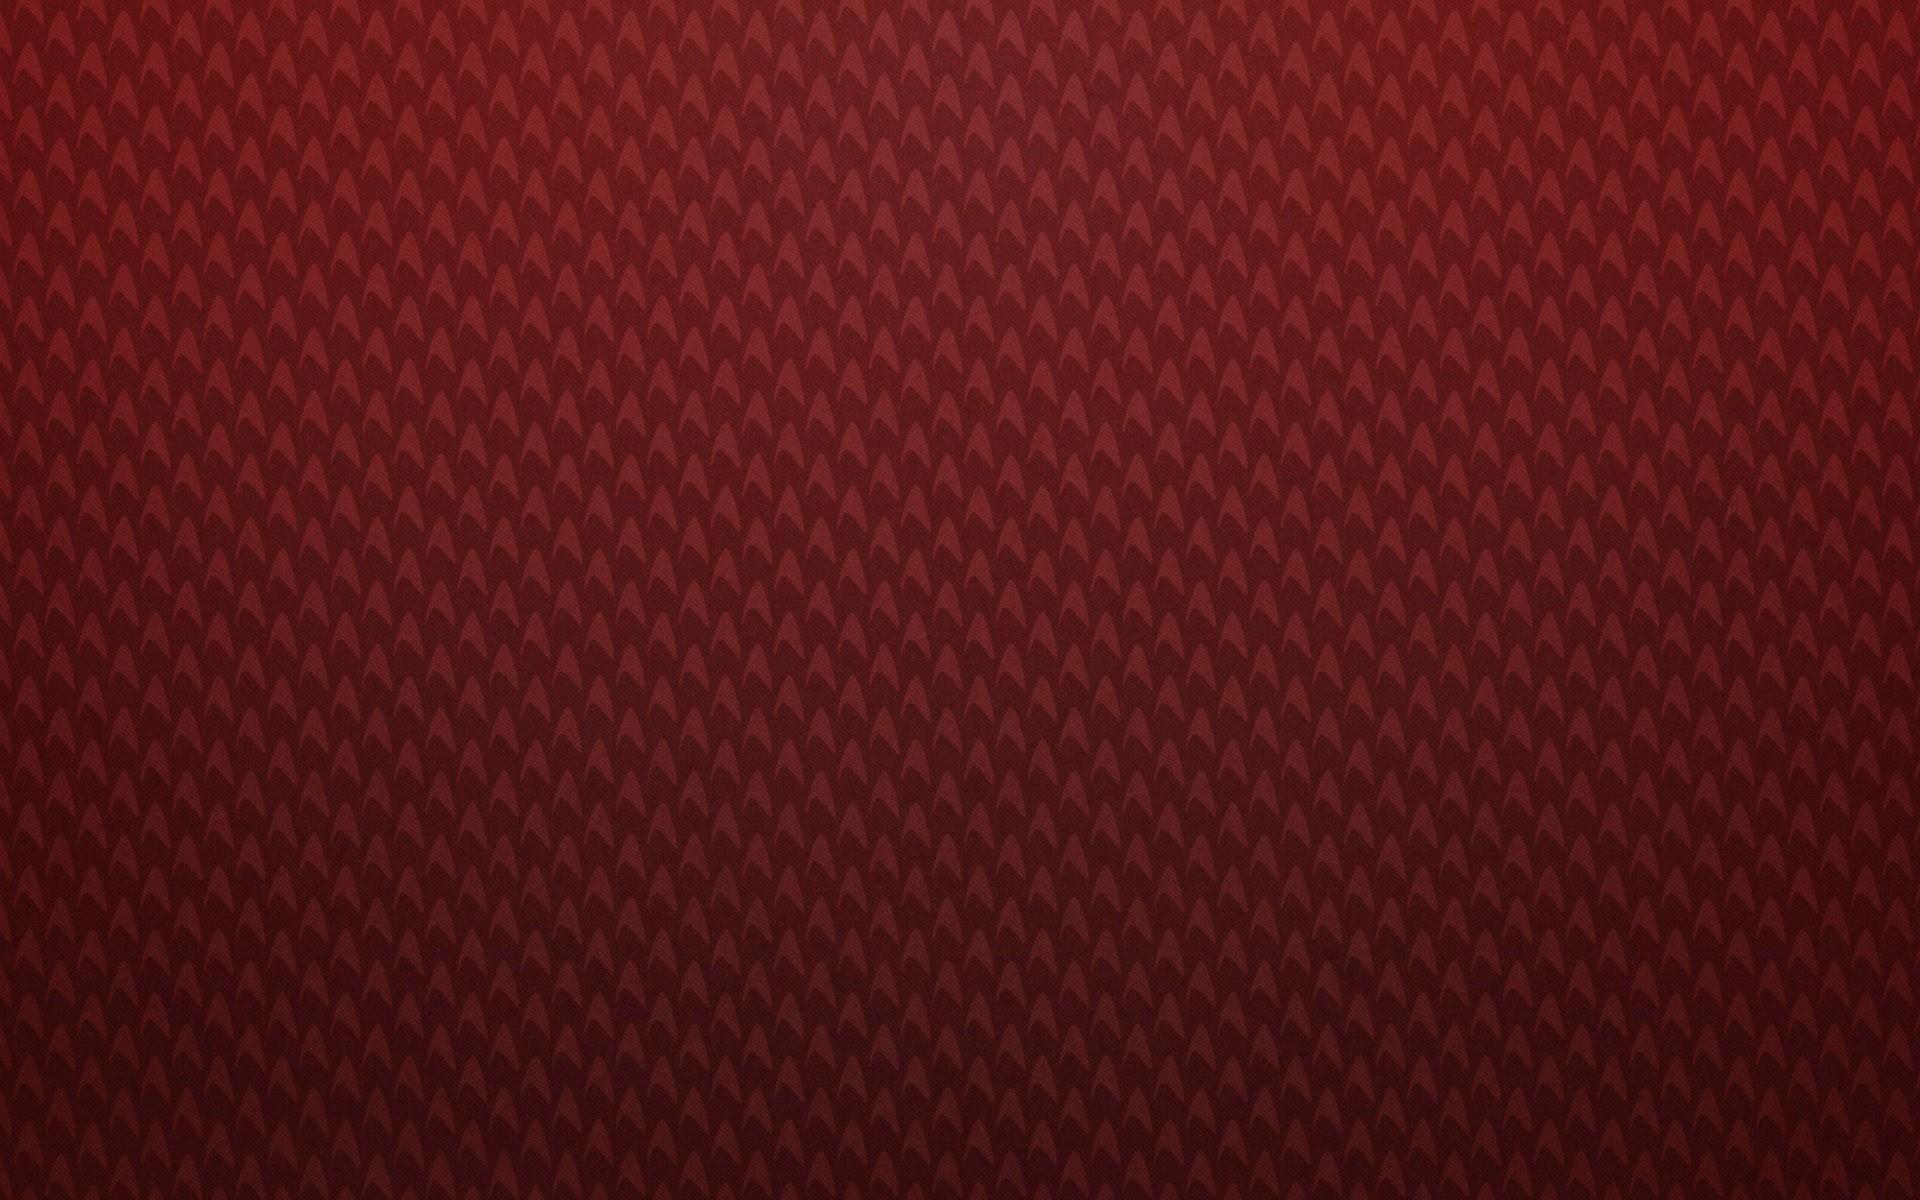 1920x1200 Red Pattern Wallpaper. Trình chỉnh sửa ảnh trực tuyến Shutterstock Editor